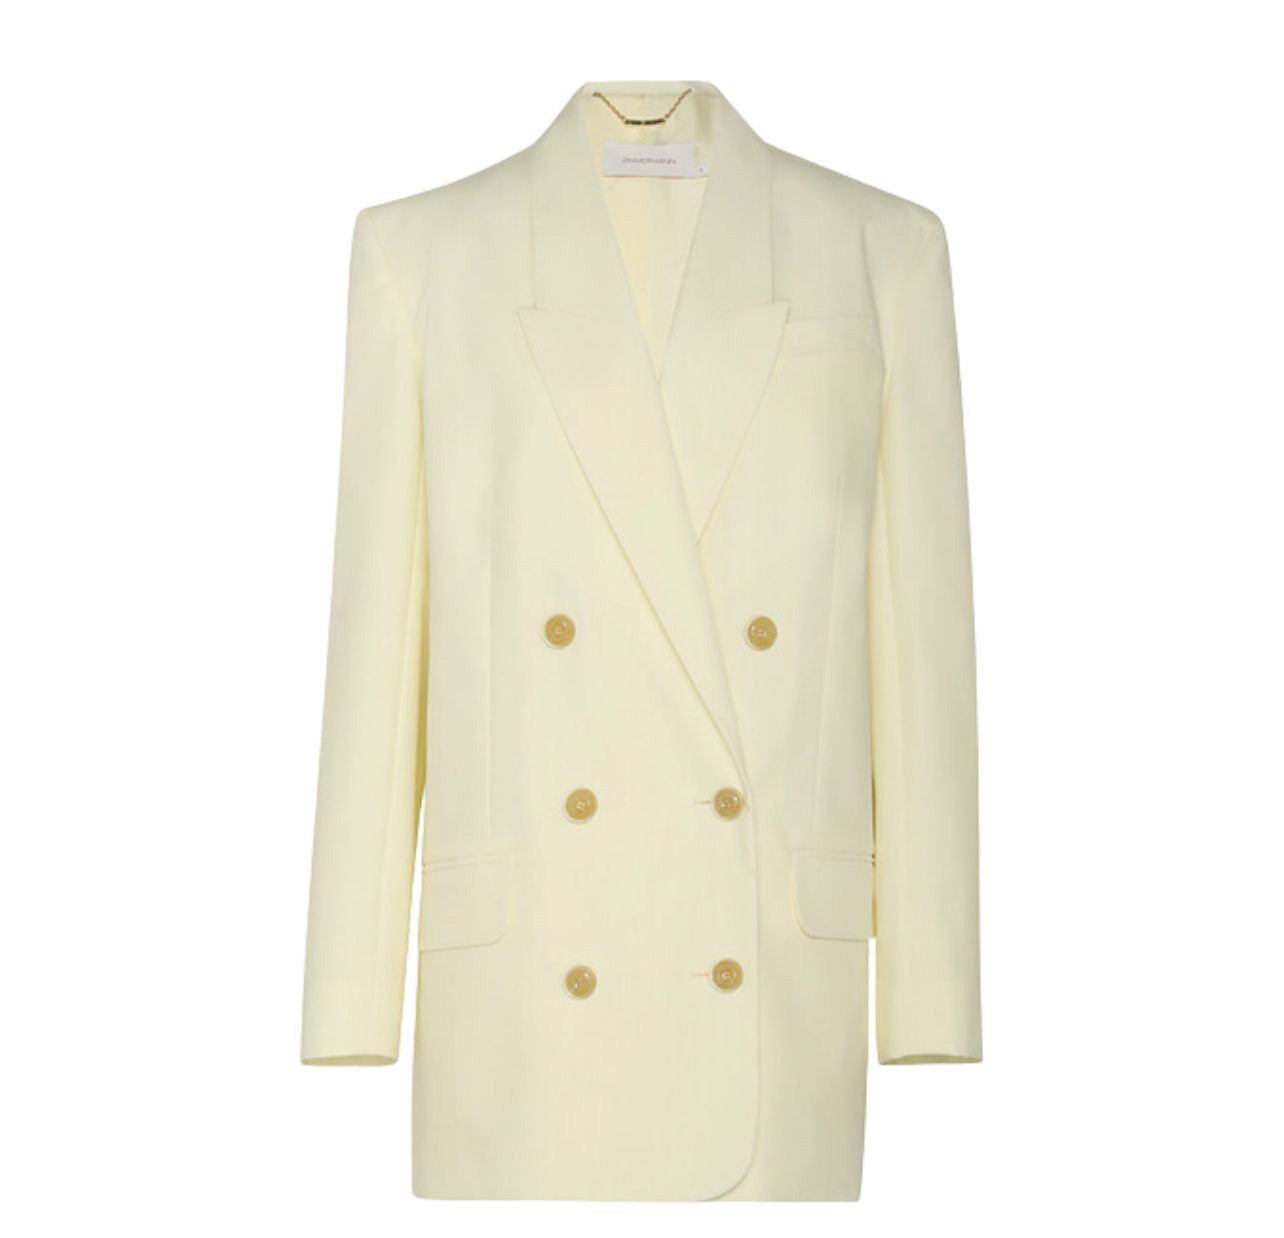 Zimmermann cream blazer with gold buttons